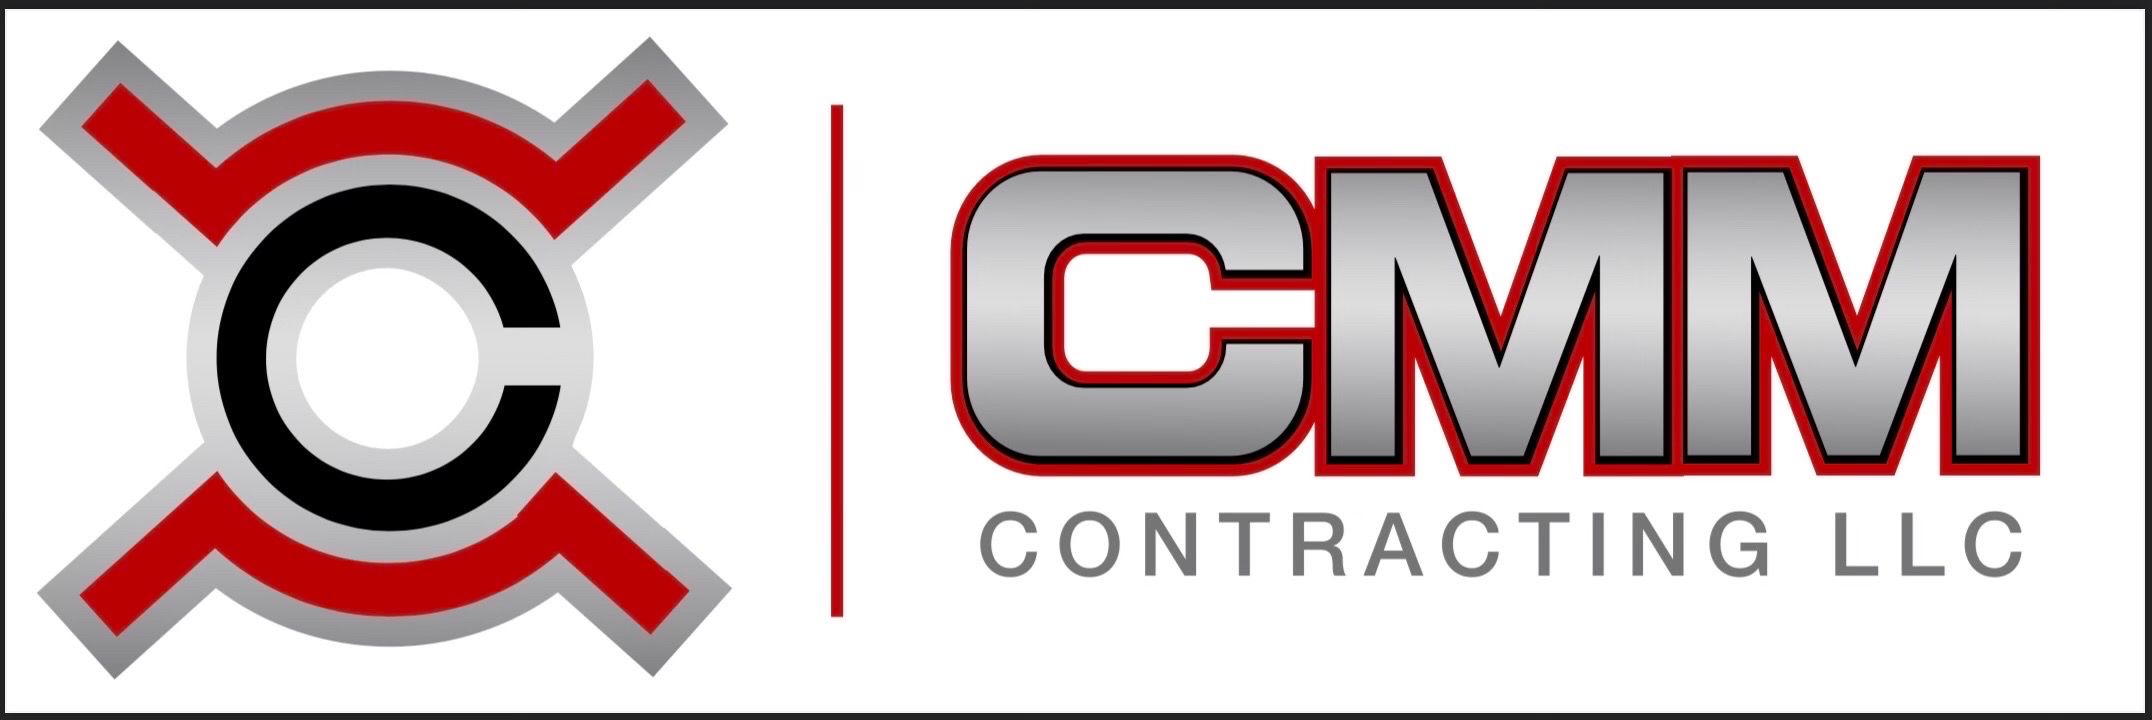 CMM Contracting